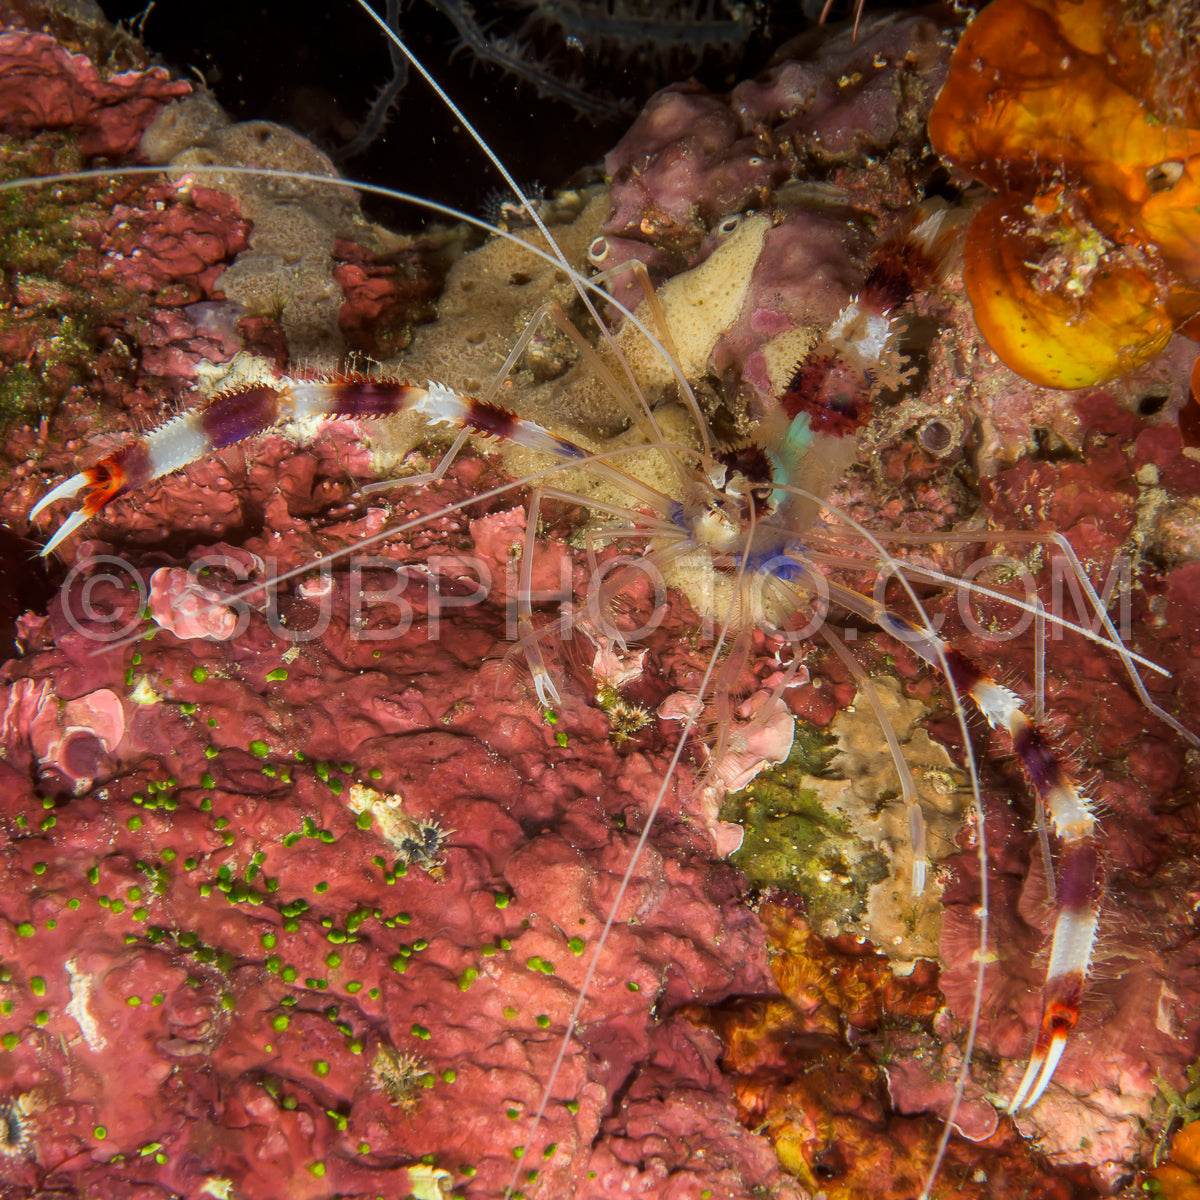 boxer banded coral shrimp